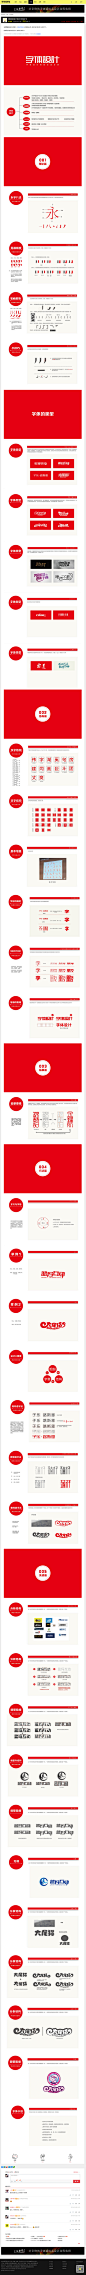 商业字体设计经验分享_字体传奇网-中国首个字体品牌设计师交流网 http://www.ziticq.com/arfont/20150118/1766.html